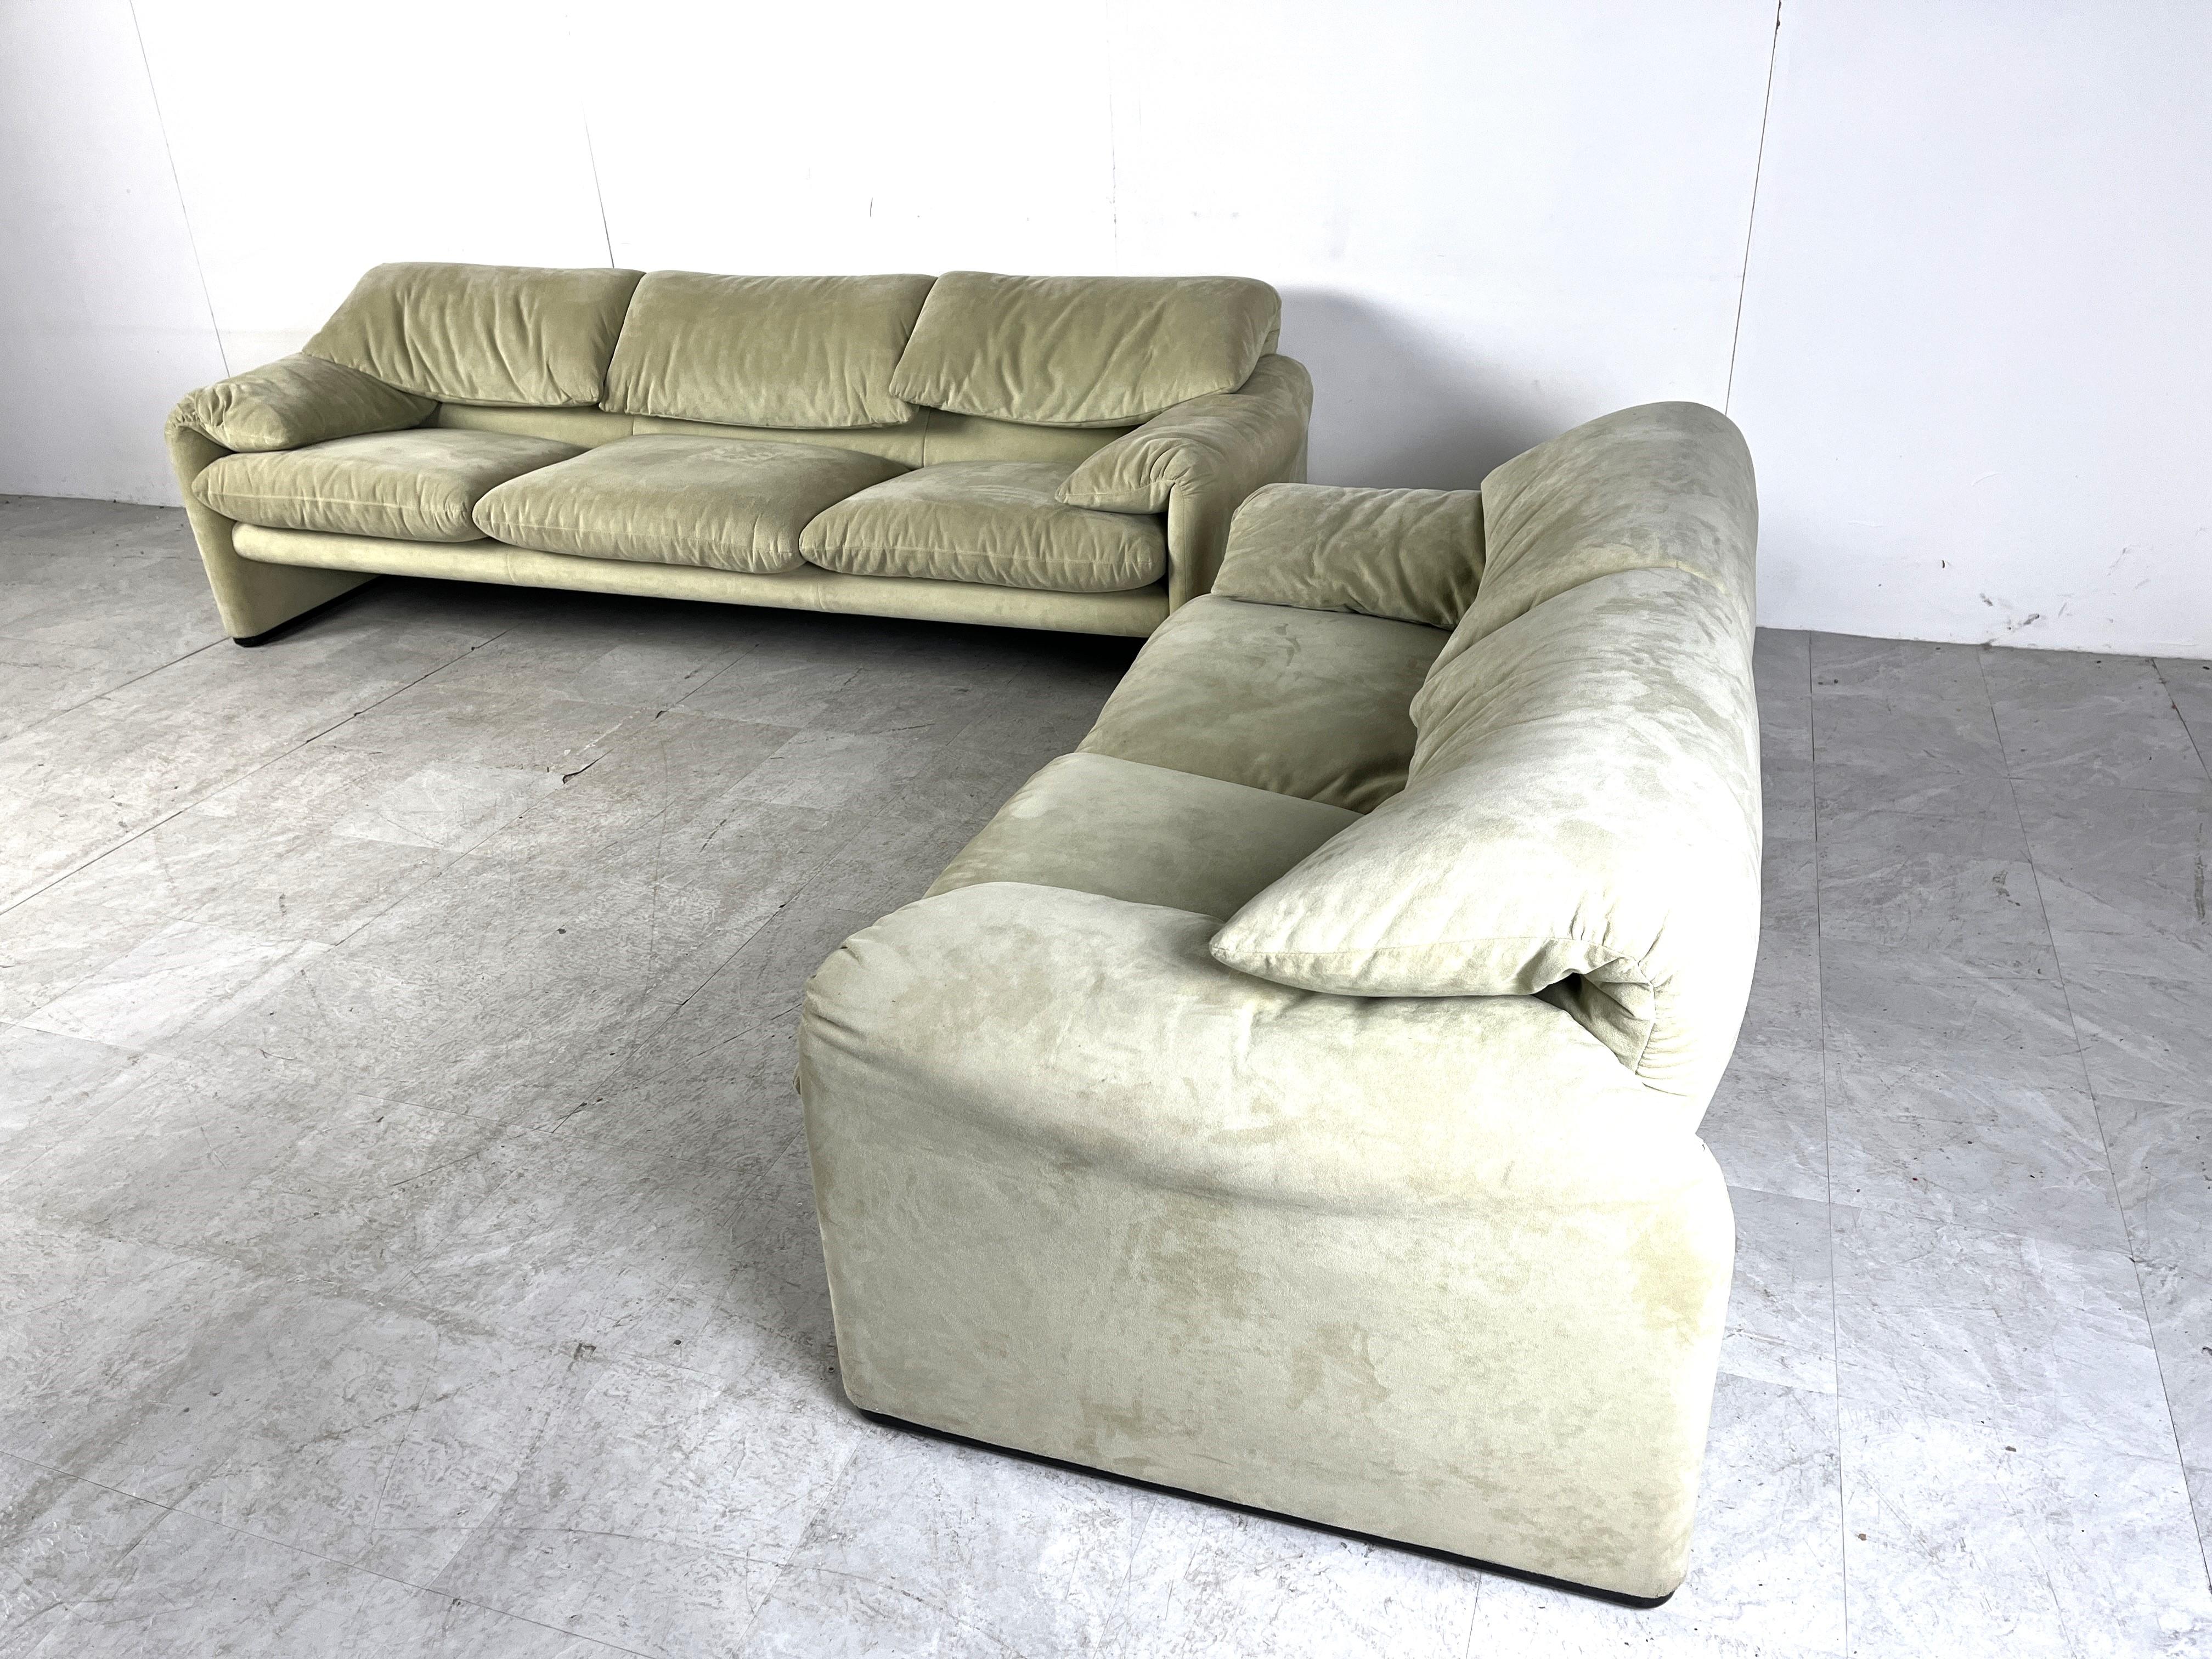 Italian Maralunga sofa set by Vico Magistretti for Cassina